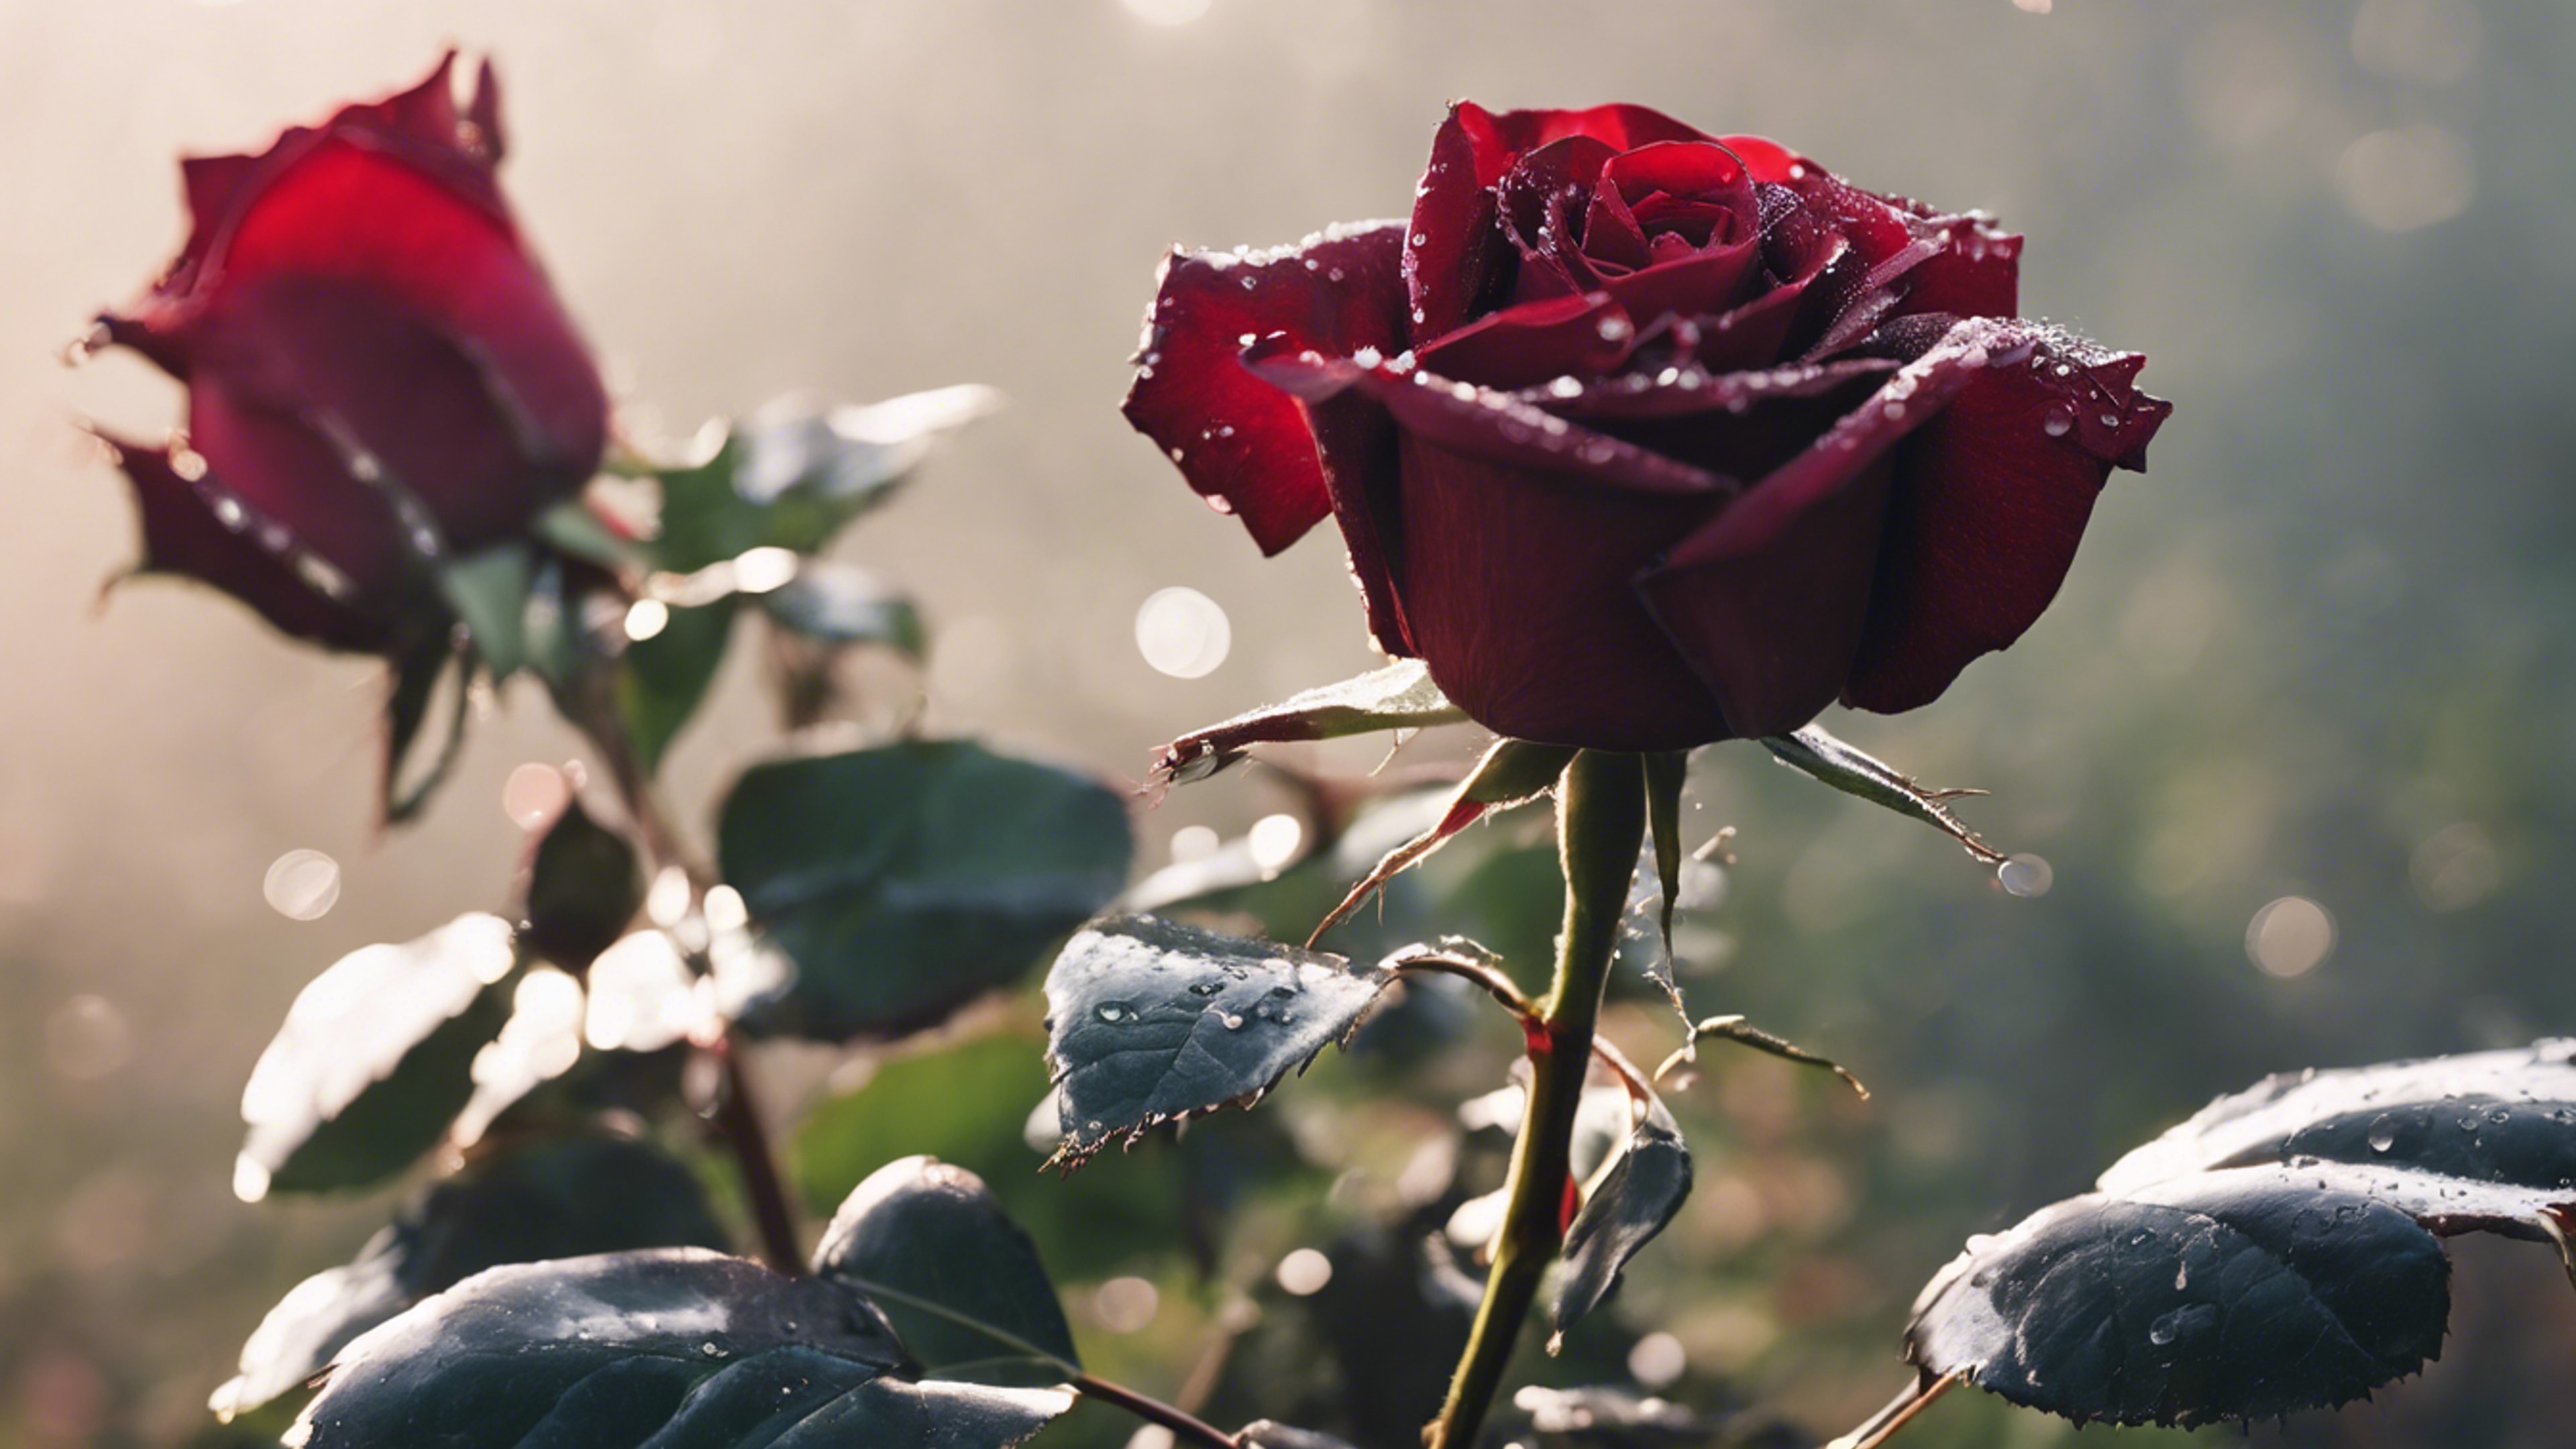 A lush dark red rose in full bloom, glistening with morning dew. duvar kağıdı[3308270db75d4dd78aa2]